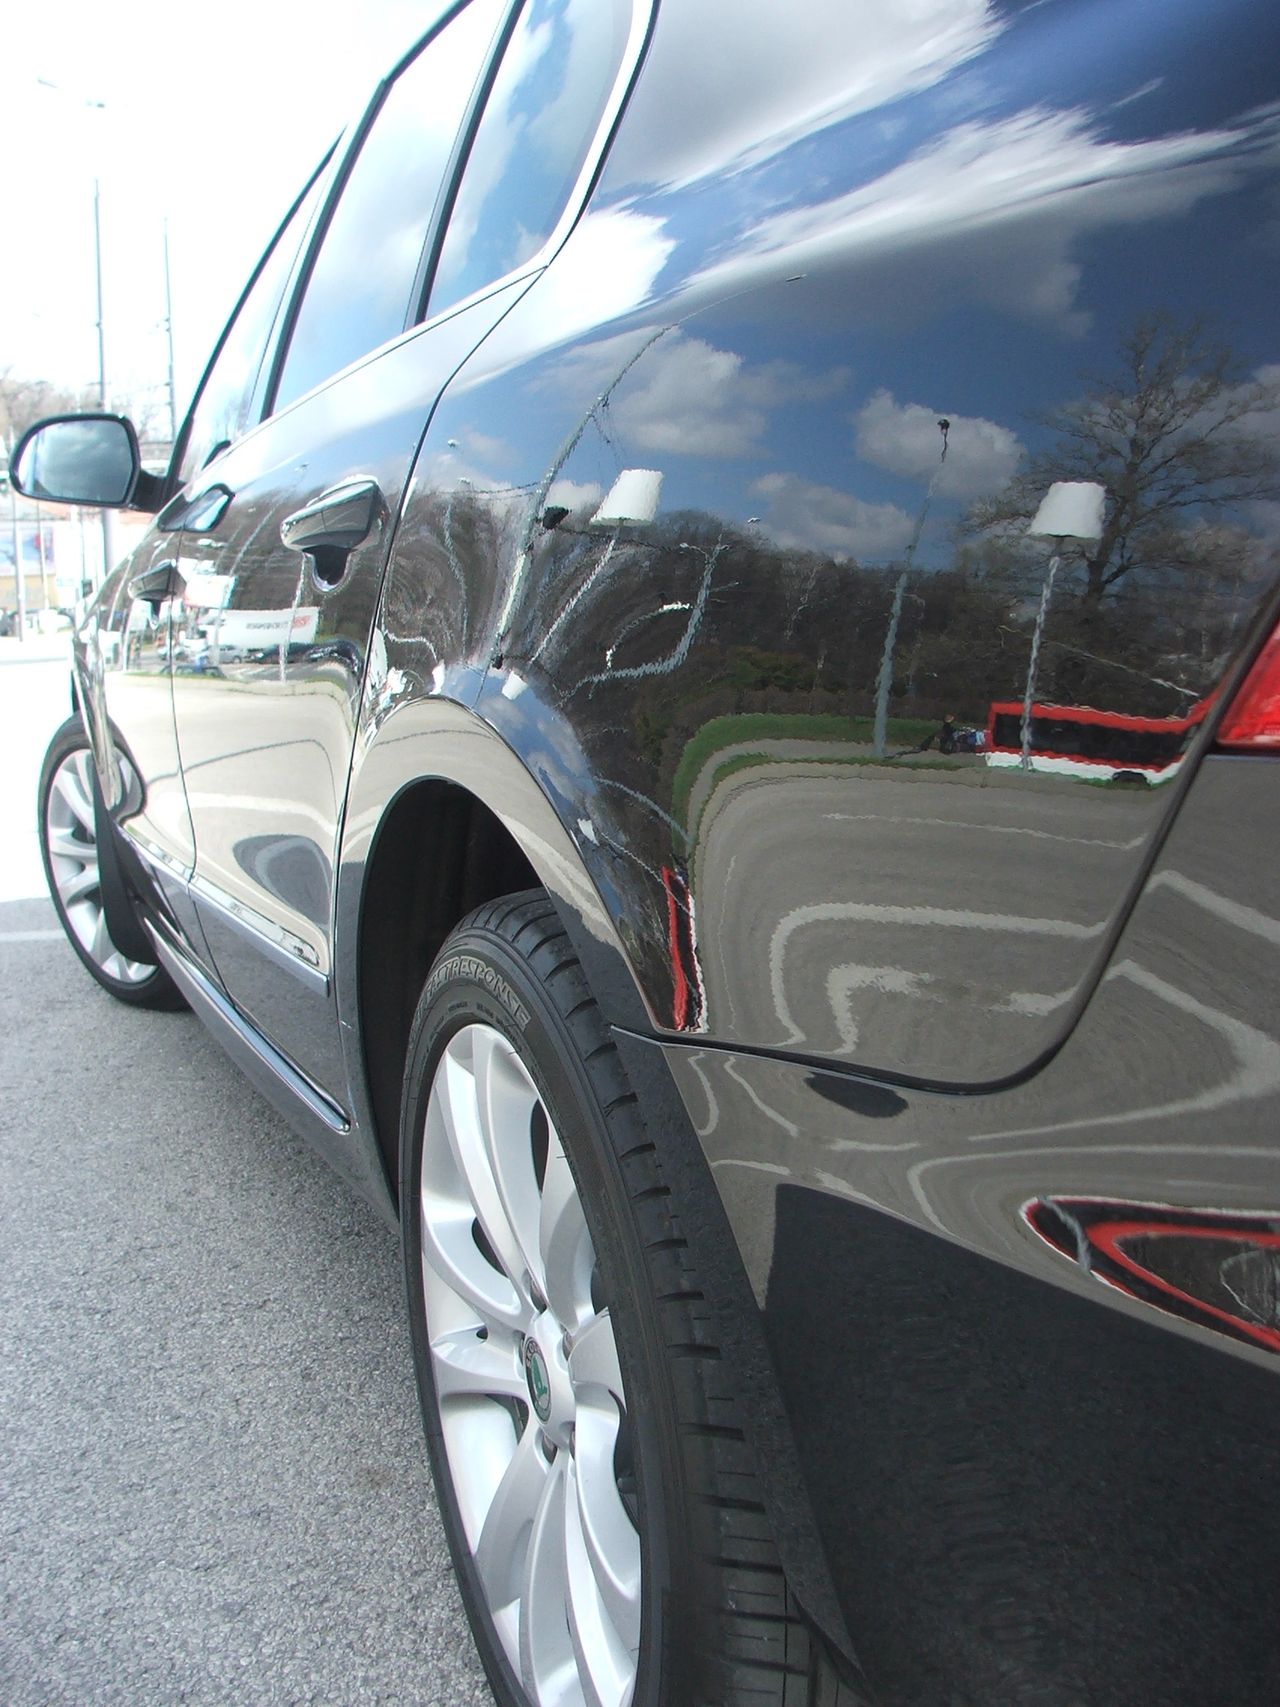 Car-detailing, czyli jak poprawnie dbać o czystość i nienaganny stan lakieru naszego auta